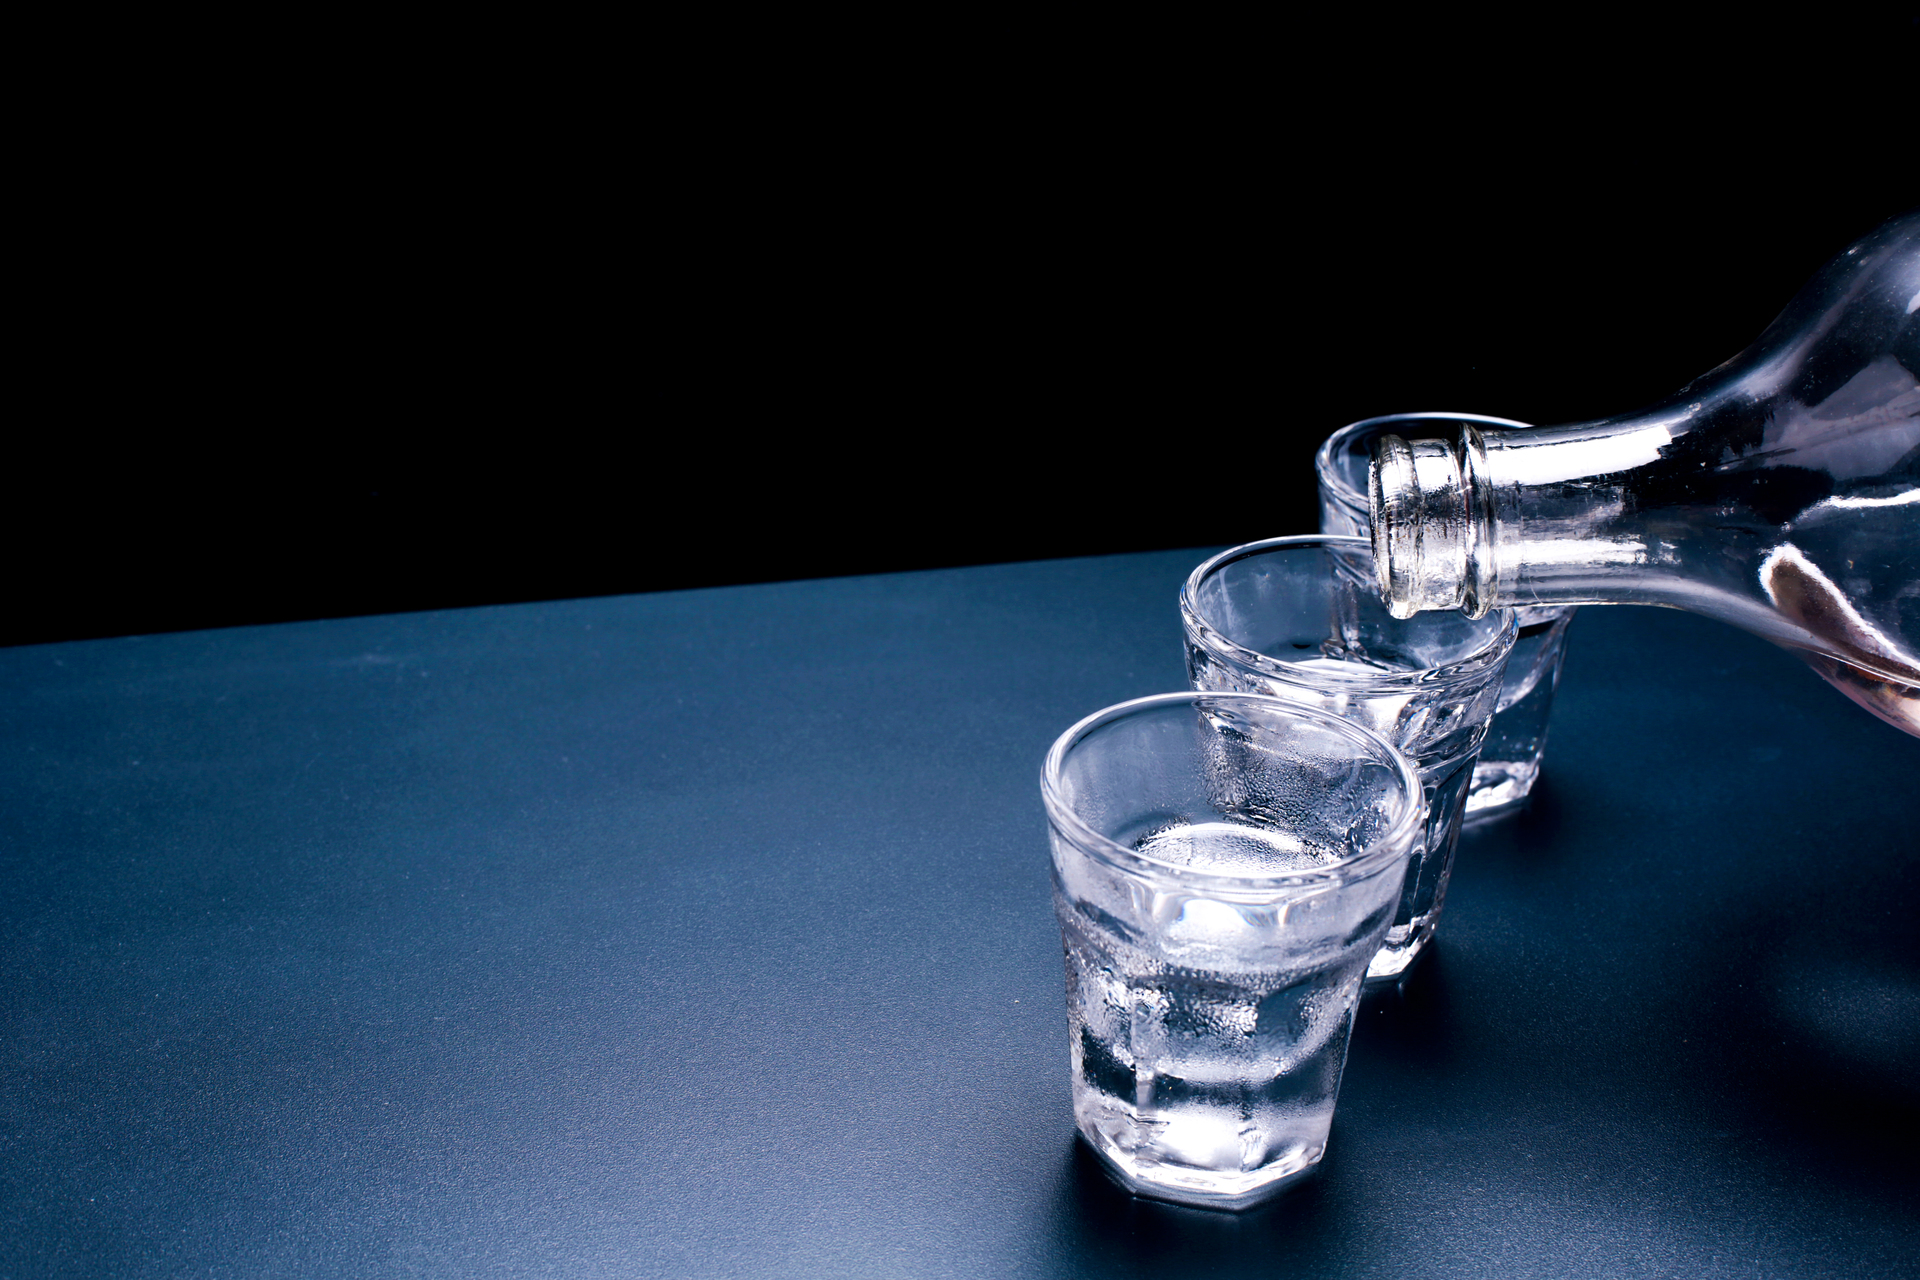 Токсиколог Водовозов: водку не нужно использовать в качестве антисептика или средства от простуды